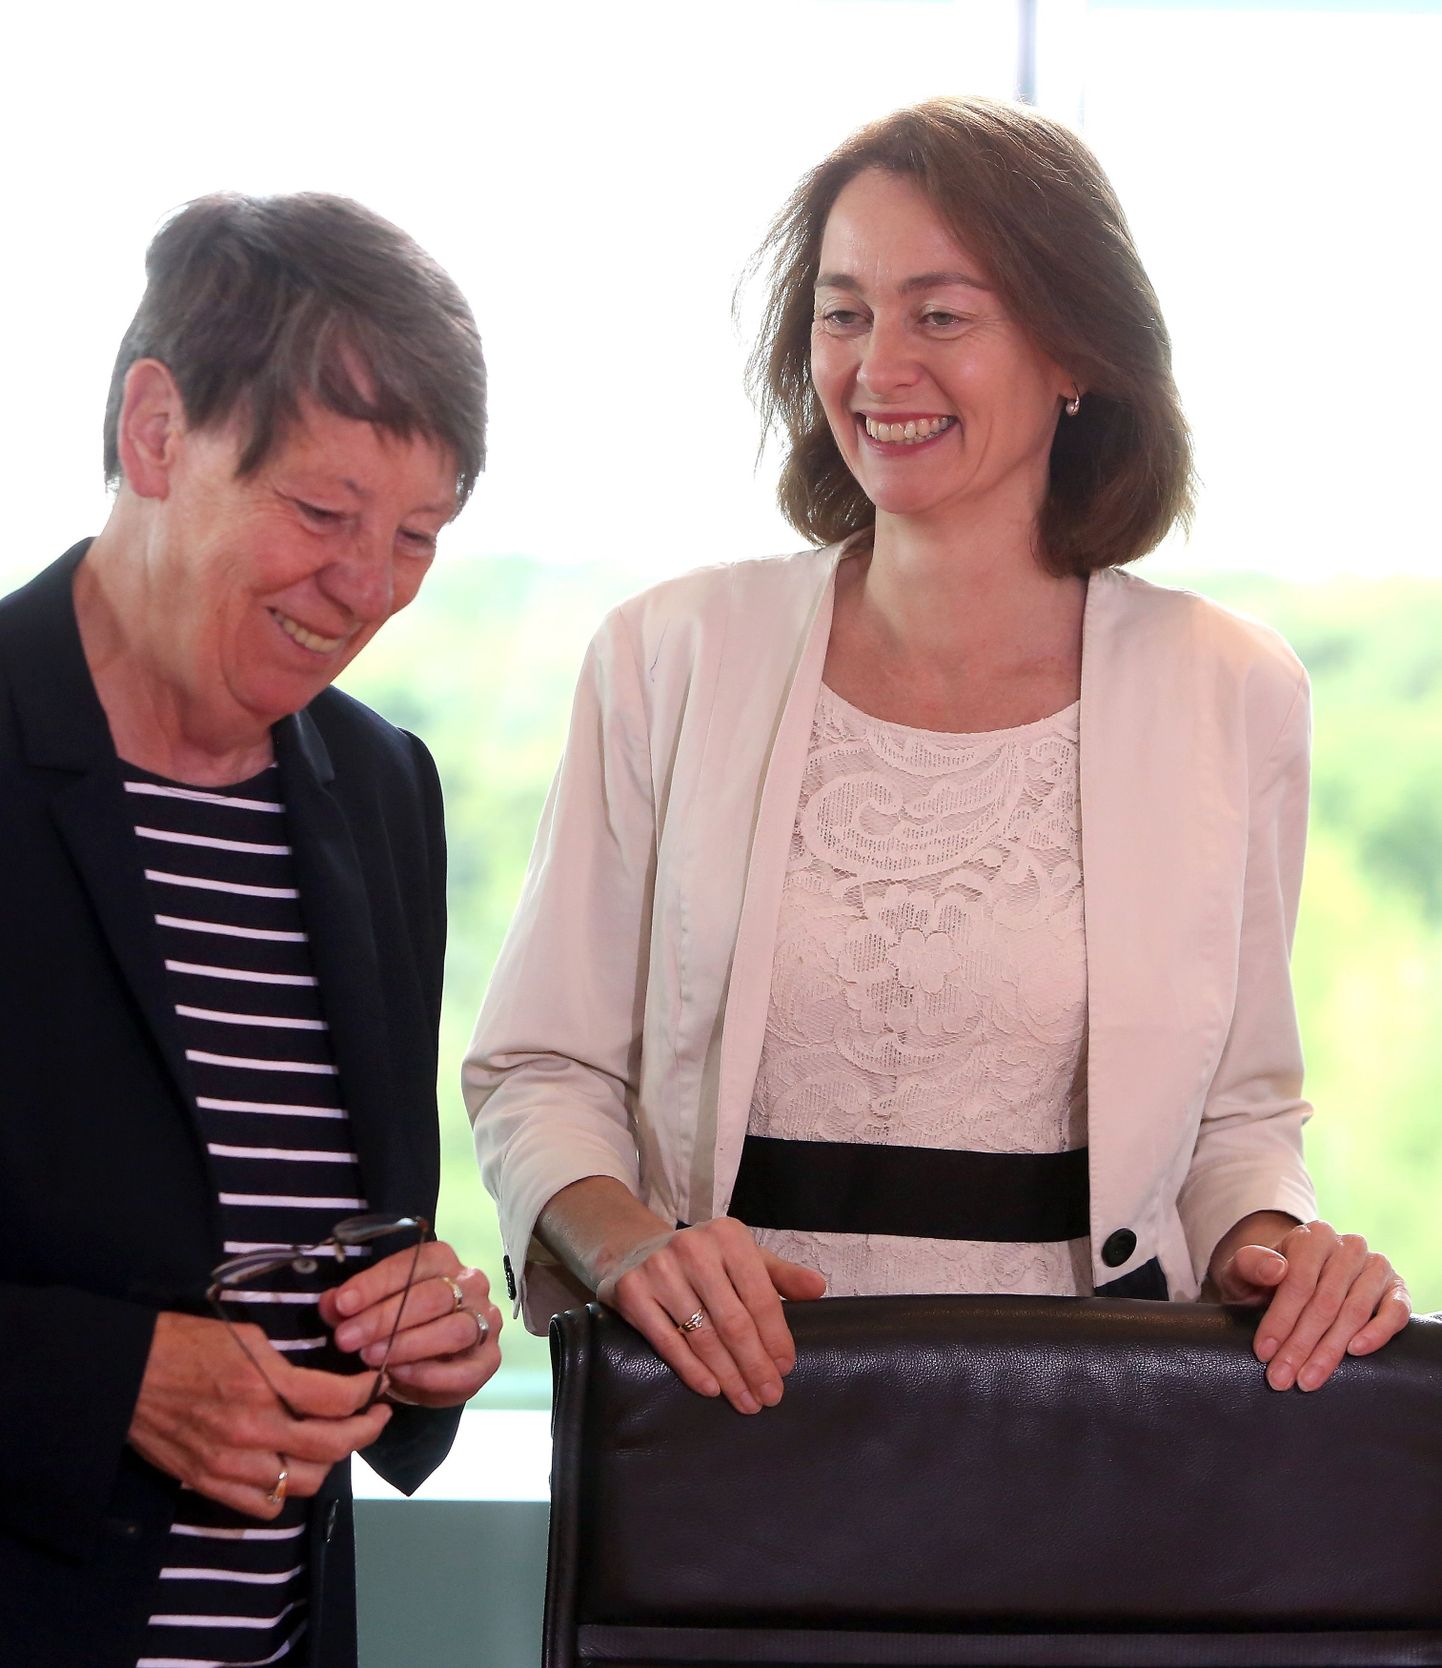 Saksa keskkonnaminister Barbara Hendricks (vasakul) ja pereminister Katarina Barley (paremal) vestlemas enne valitsuse istungit.